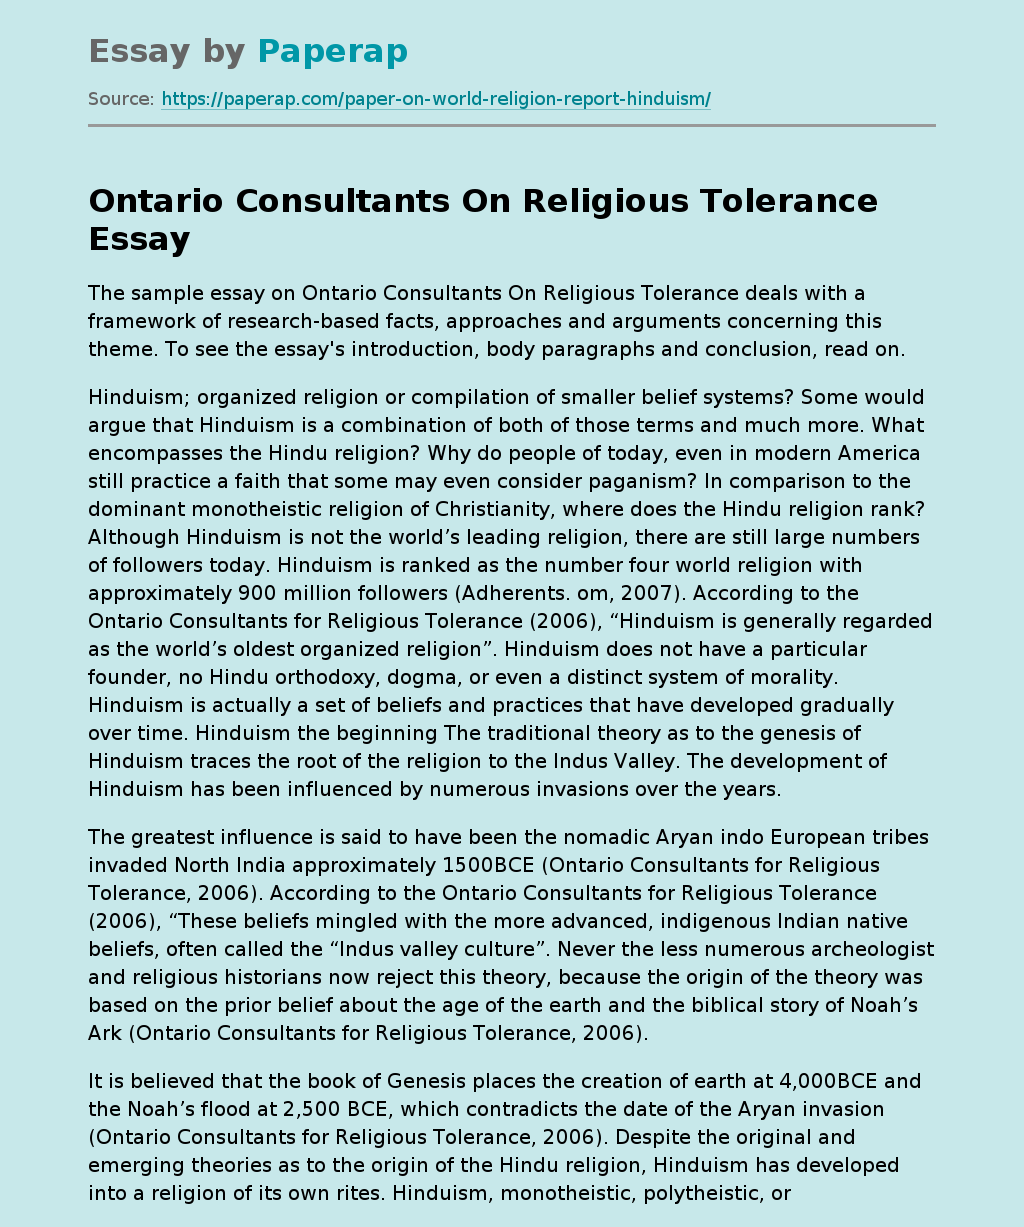 Ontario Consultants On Religious Tolerance